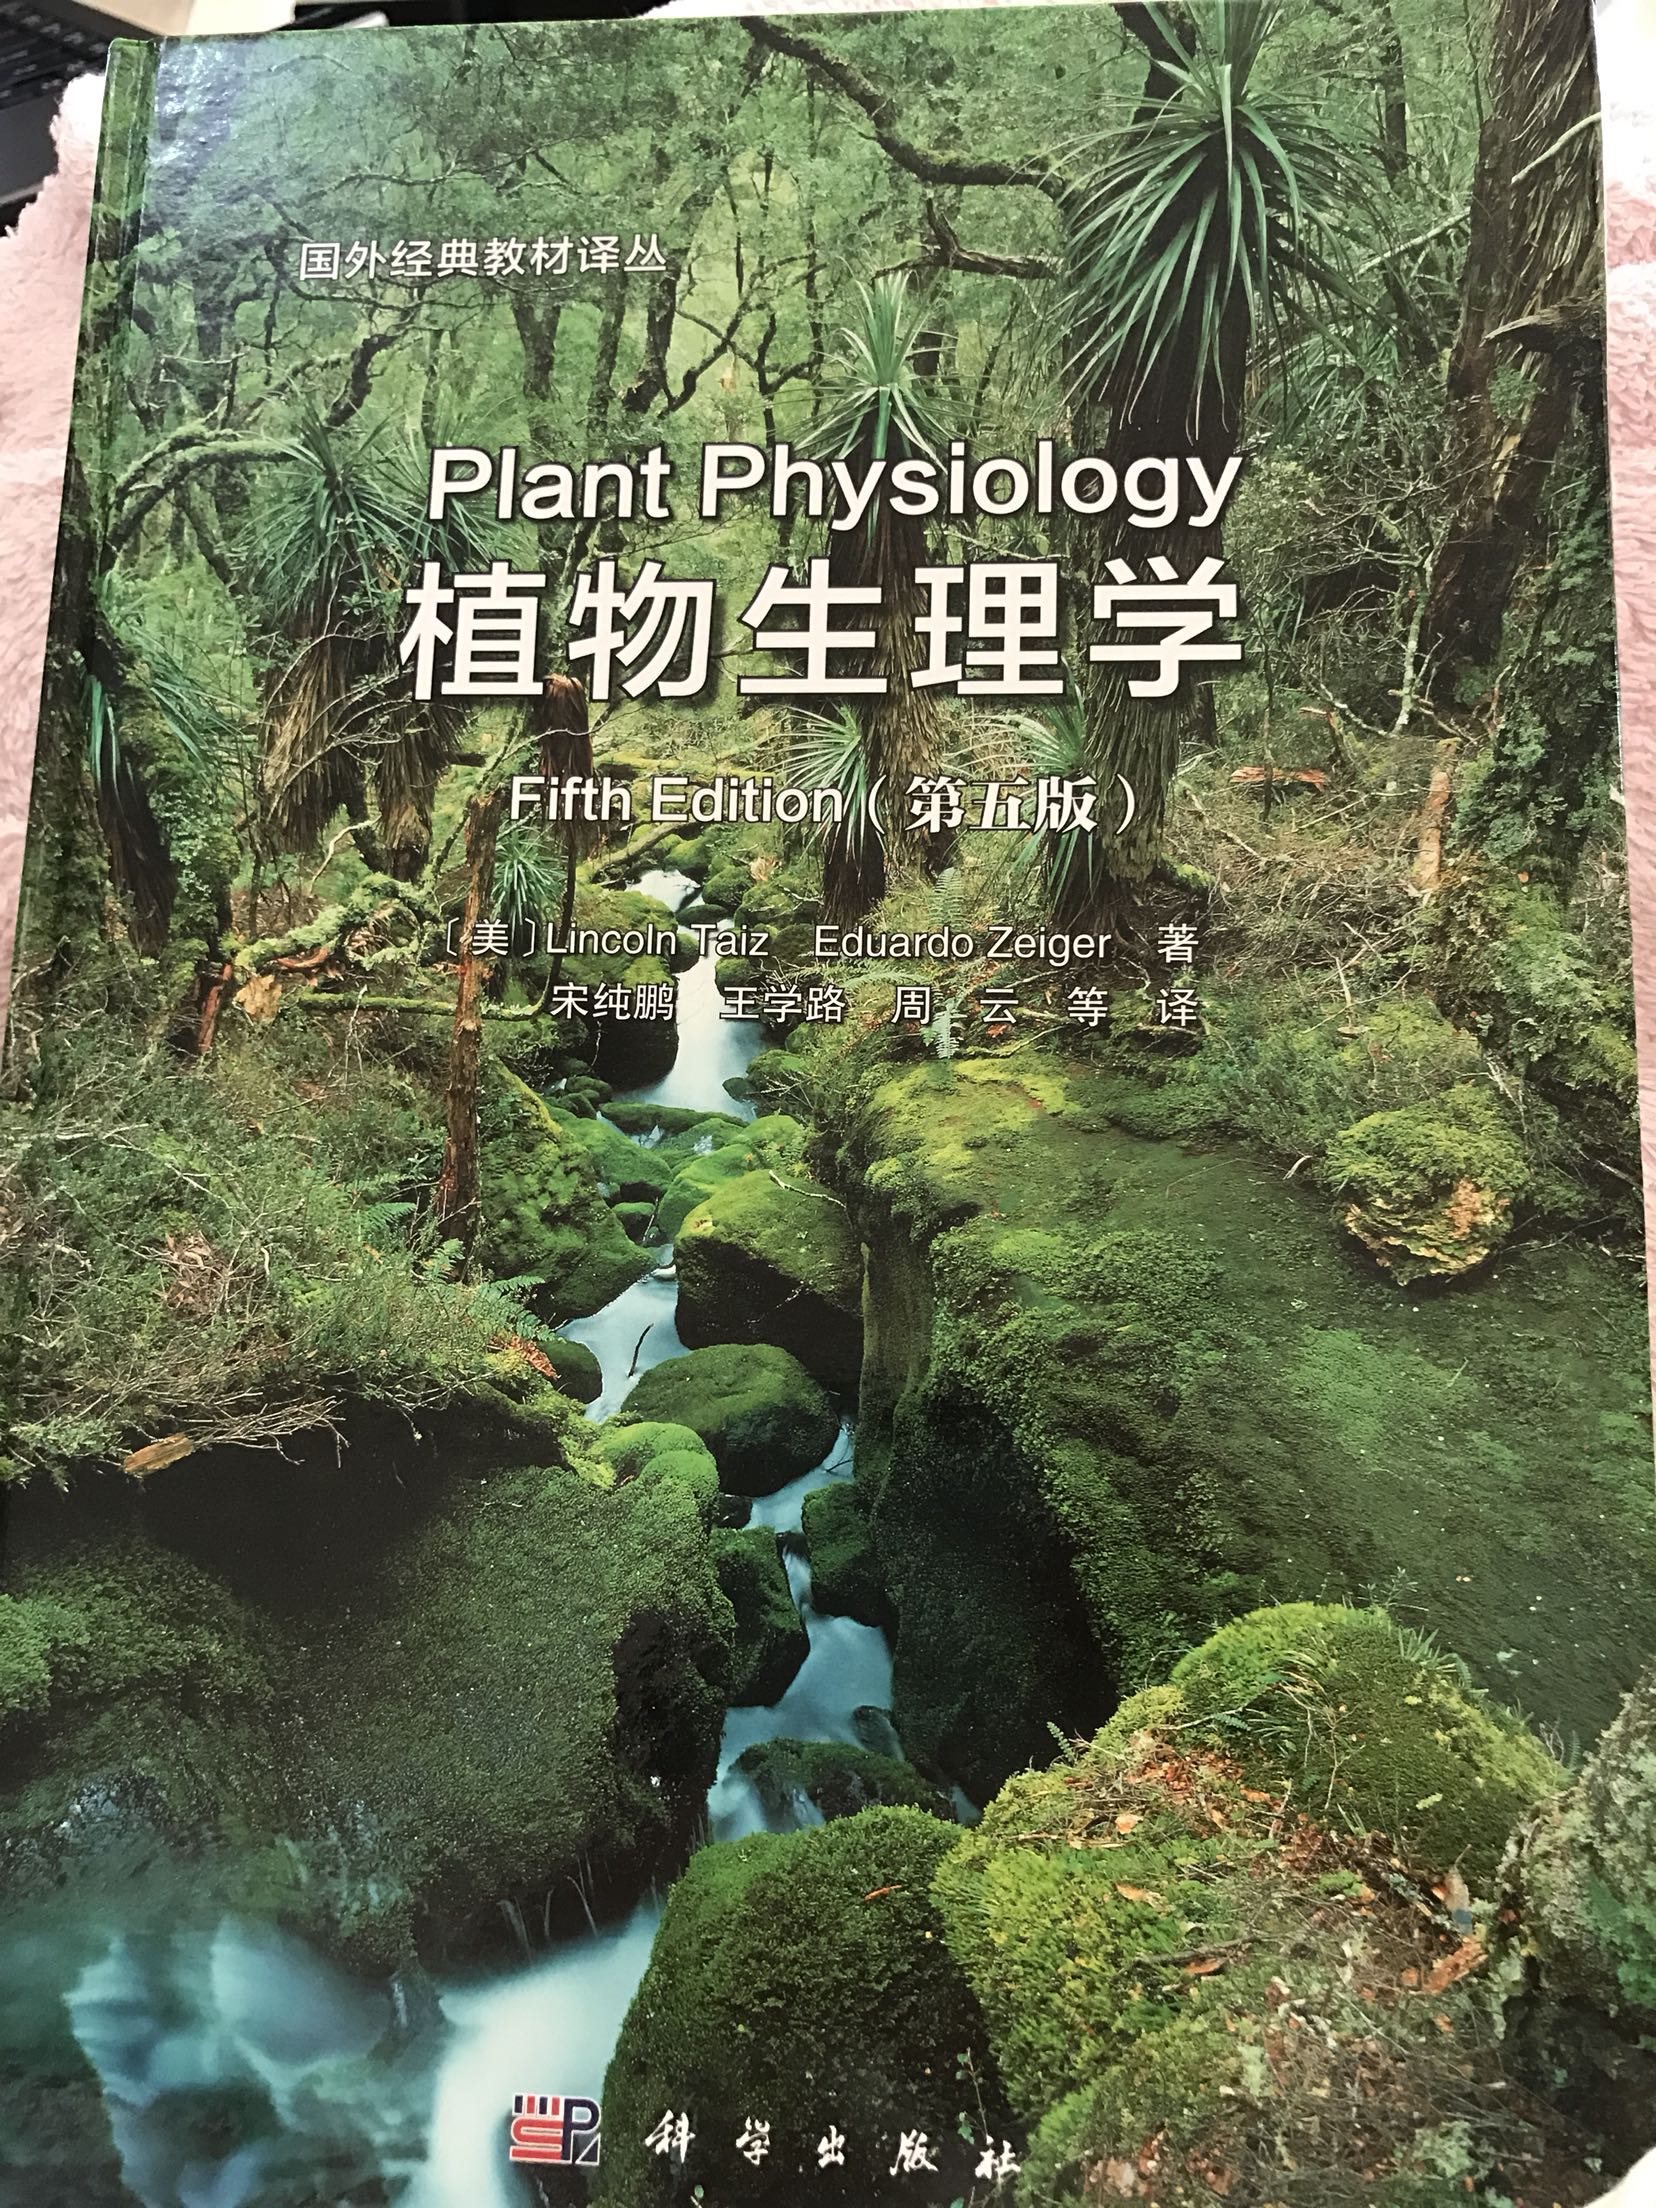 非常好的书，印刷质量很好，翻译也给力，对于植物爱好者是理论指导，强烈推荐！